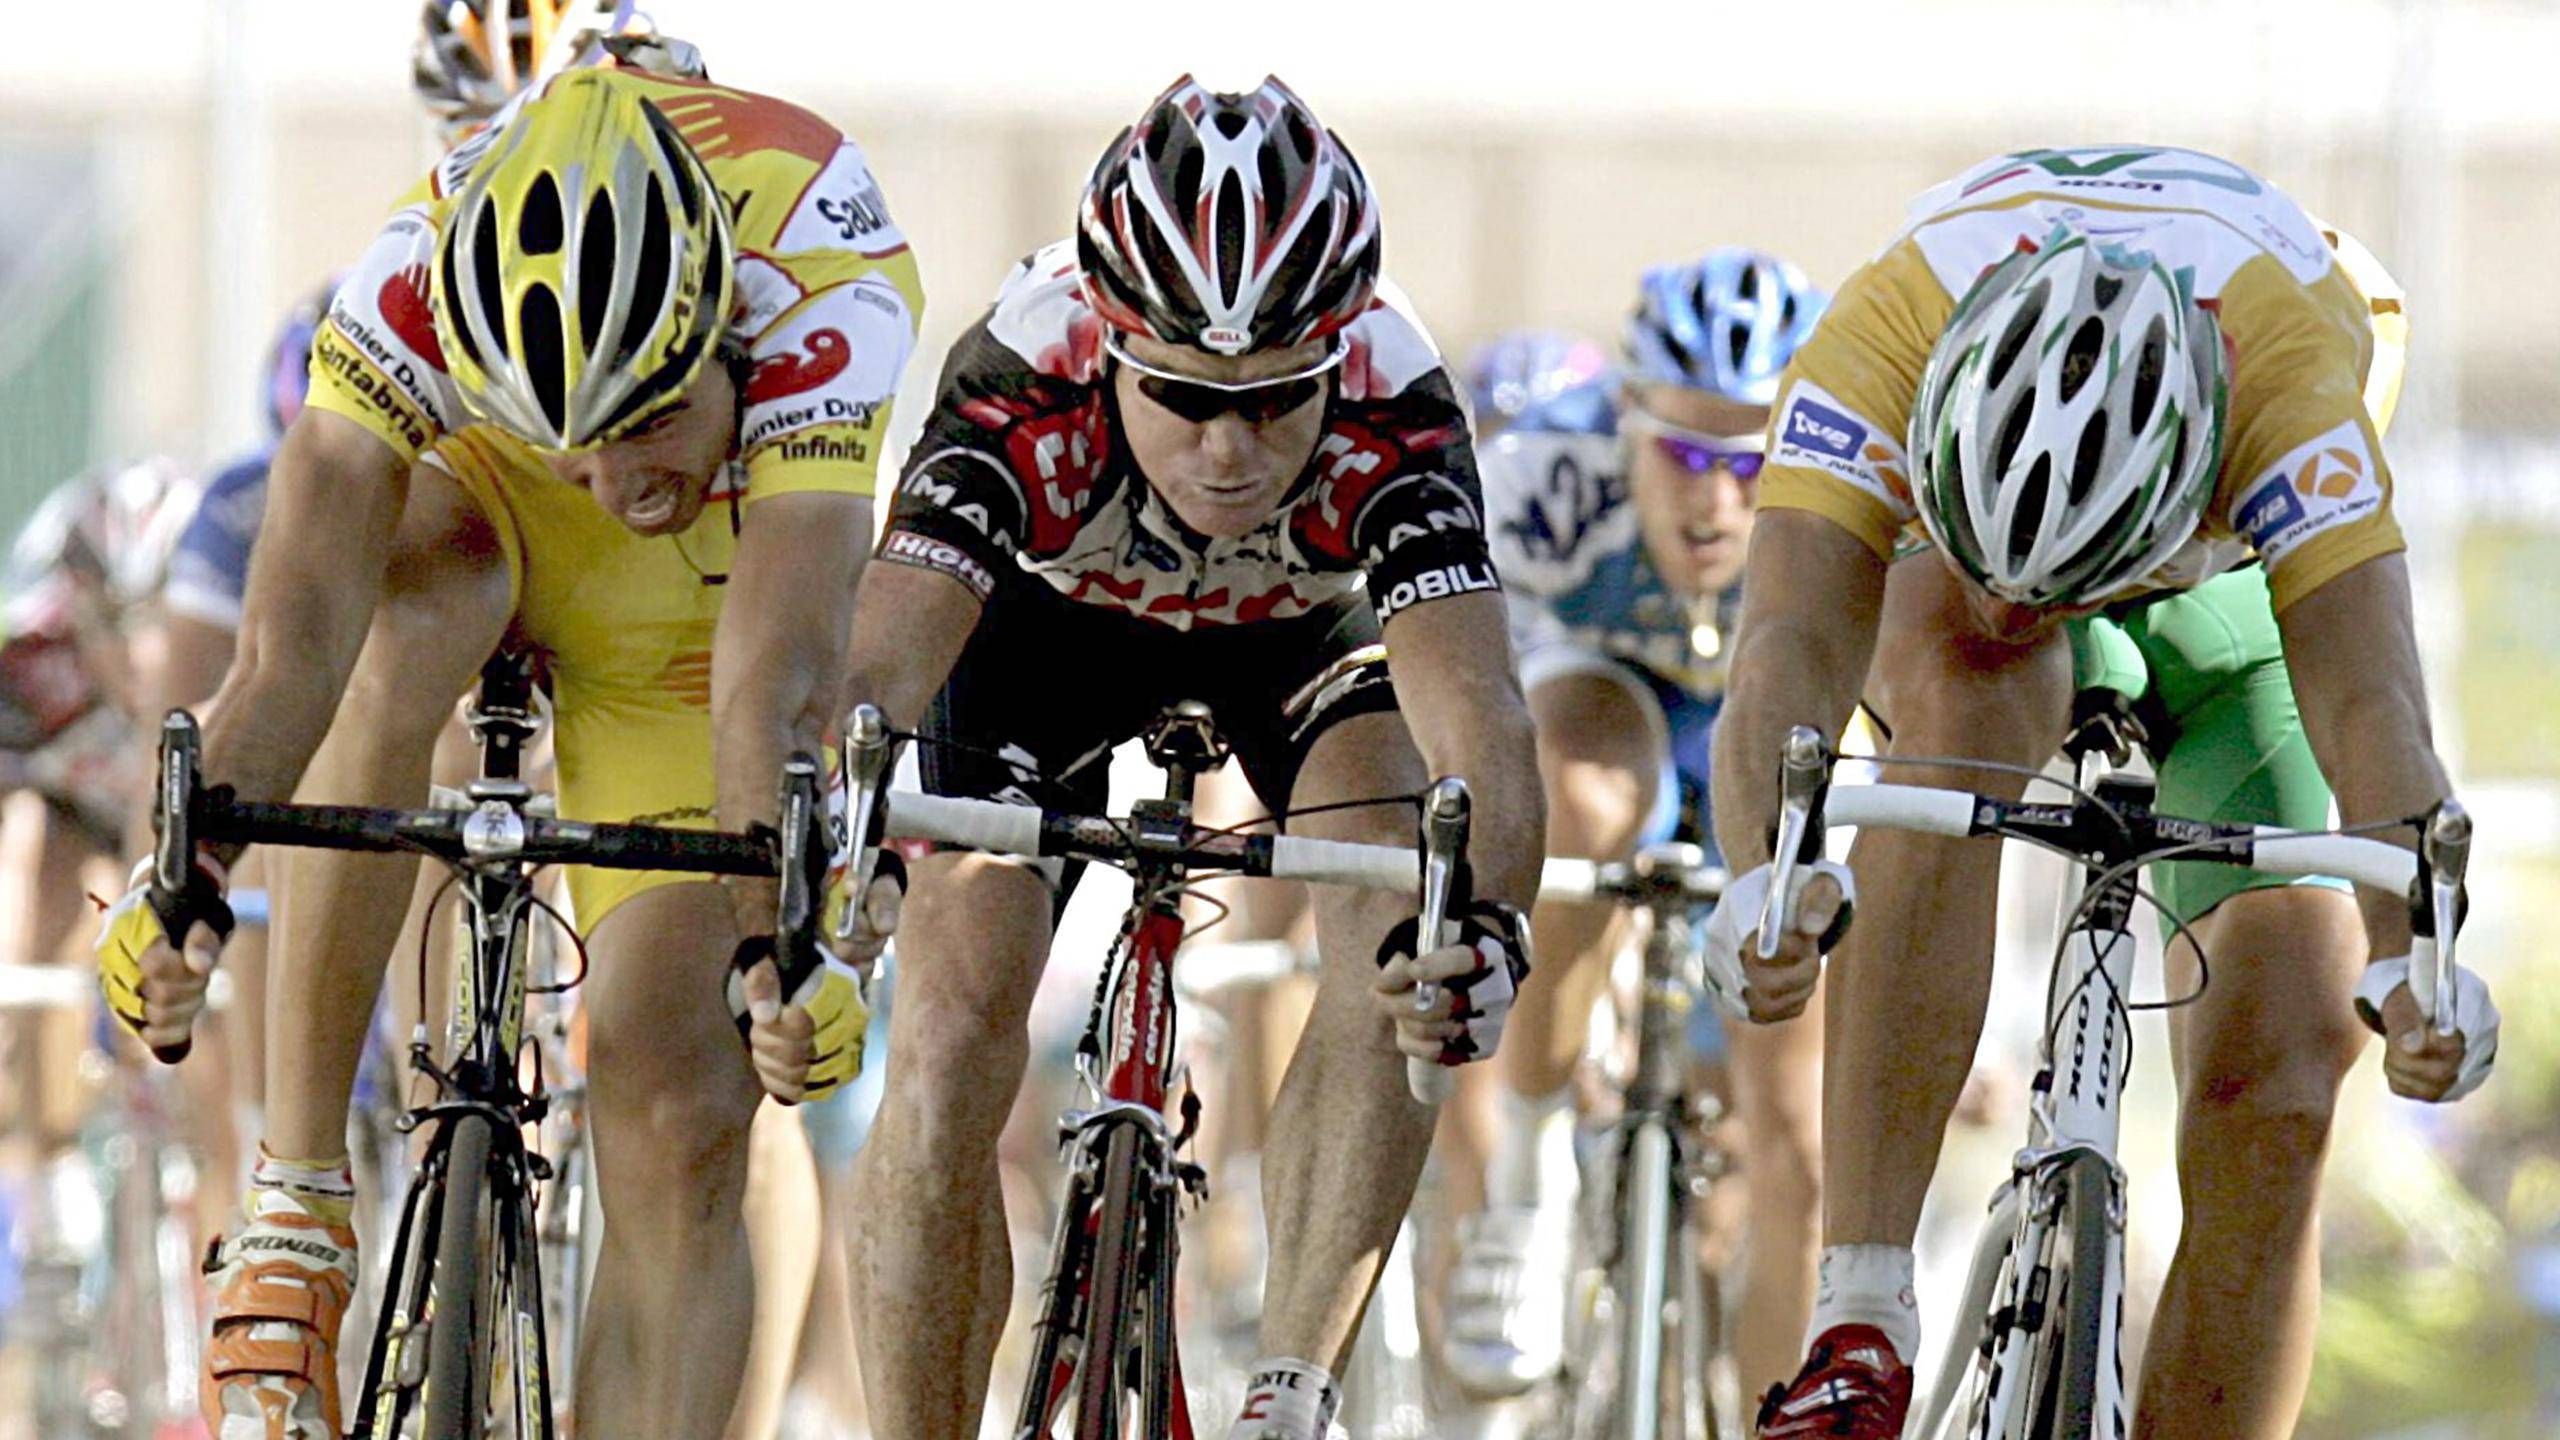 Велогонки на треке как вид спорта, особенности велотреков, дисциплины, мировые и олимпийские рекорды